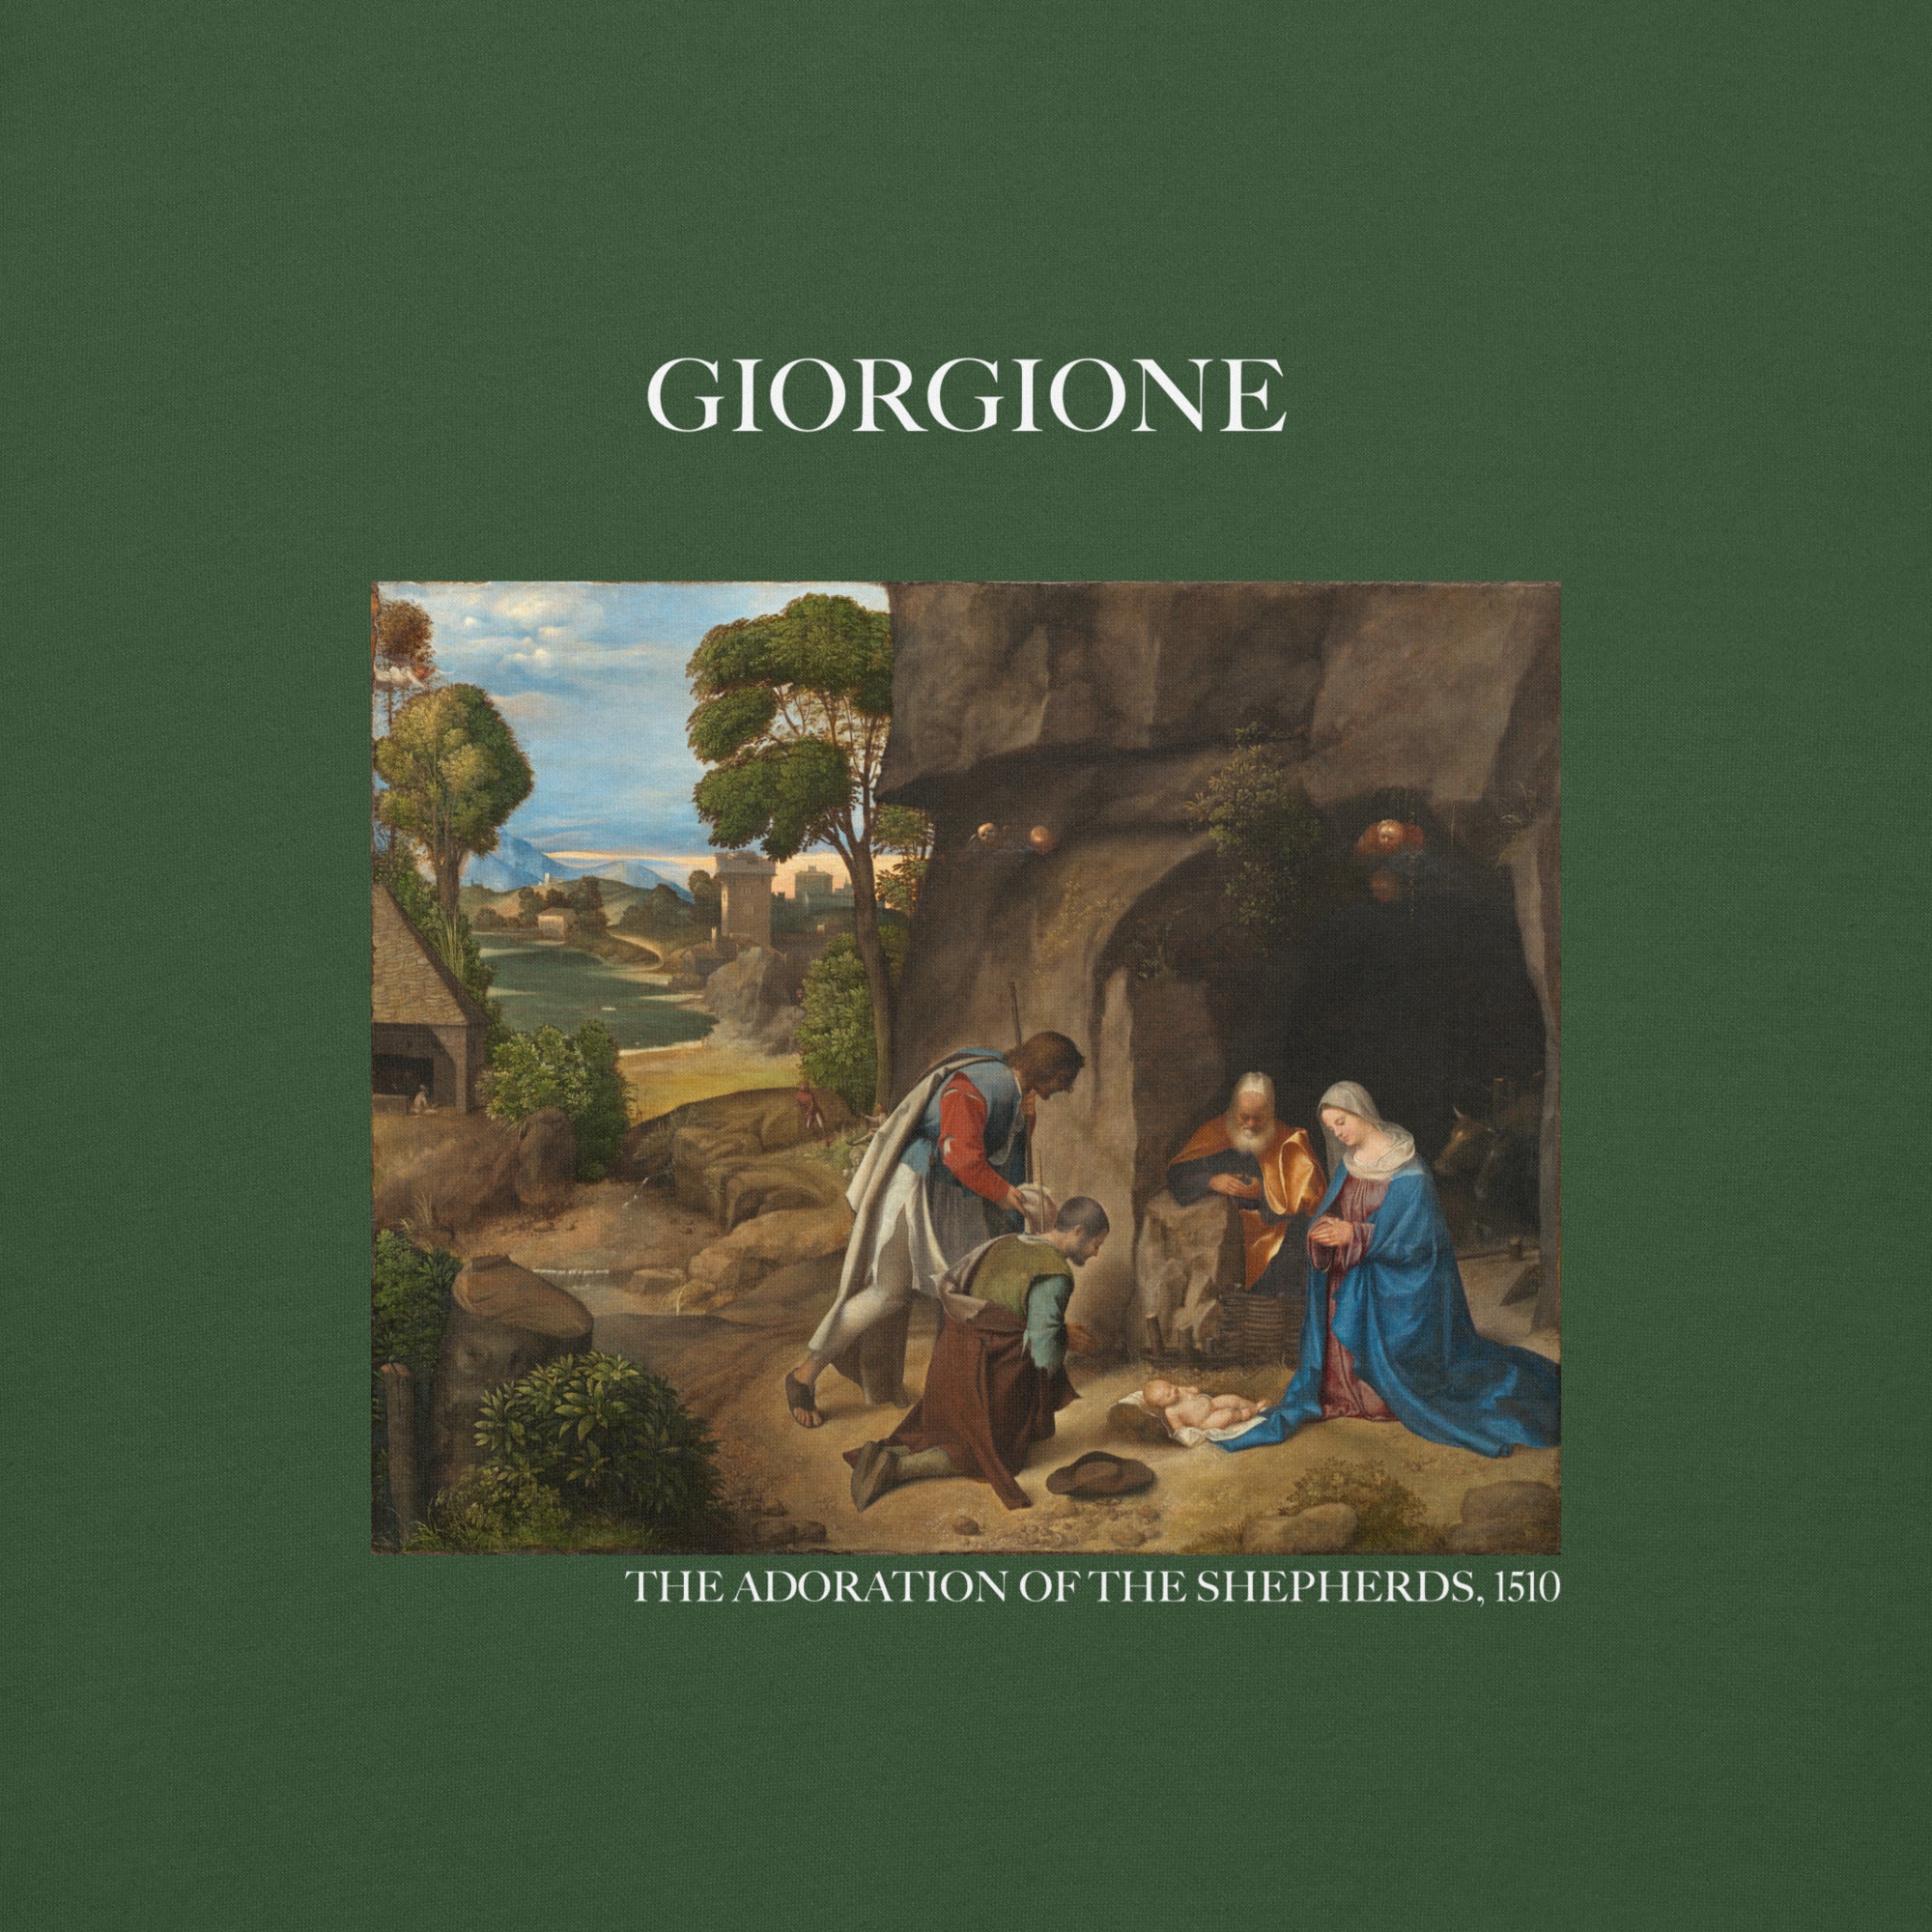 Giorgione - Sweatshirt mit berühmtem Gemälde „Die Anbetung der Hirten“ | Premium-Unisex-Sweatshirt